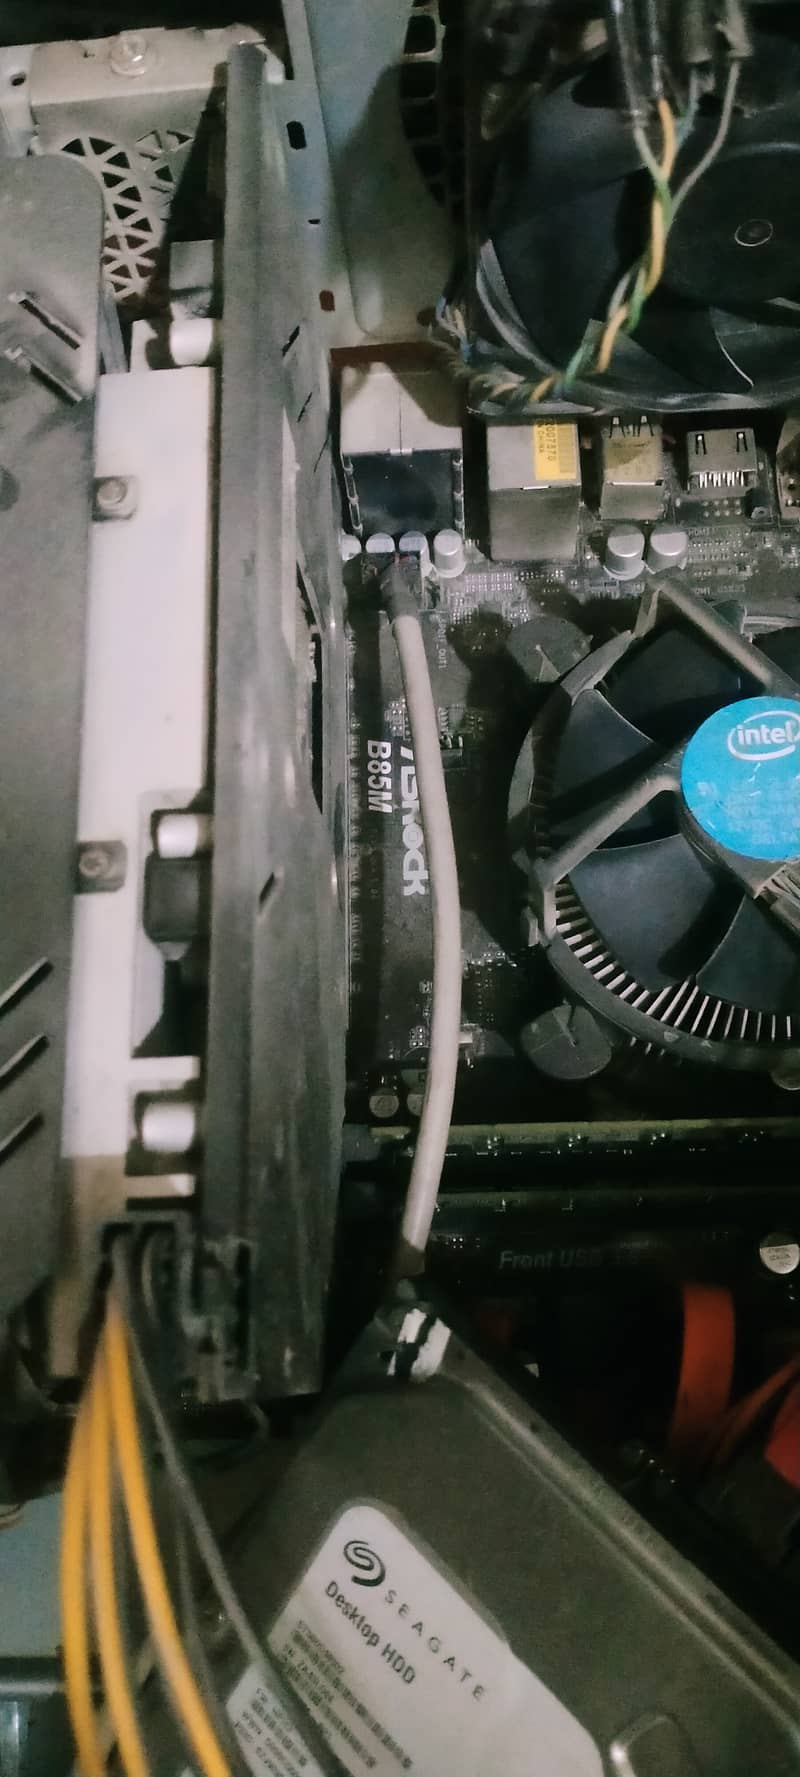 AMD Radeon Rx 580 2048 sp 6.8/10 condition 1